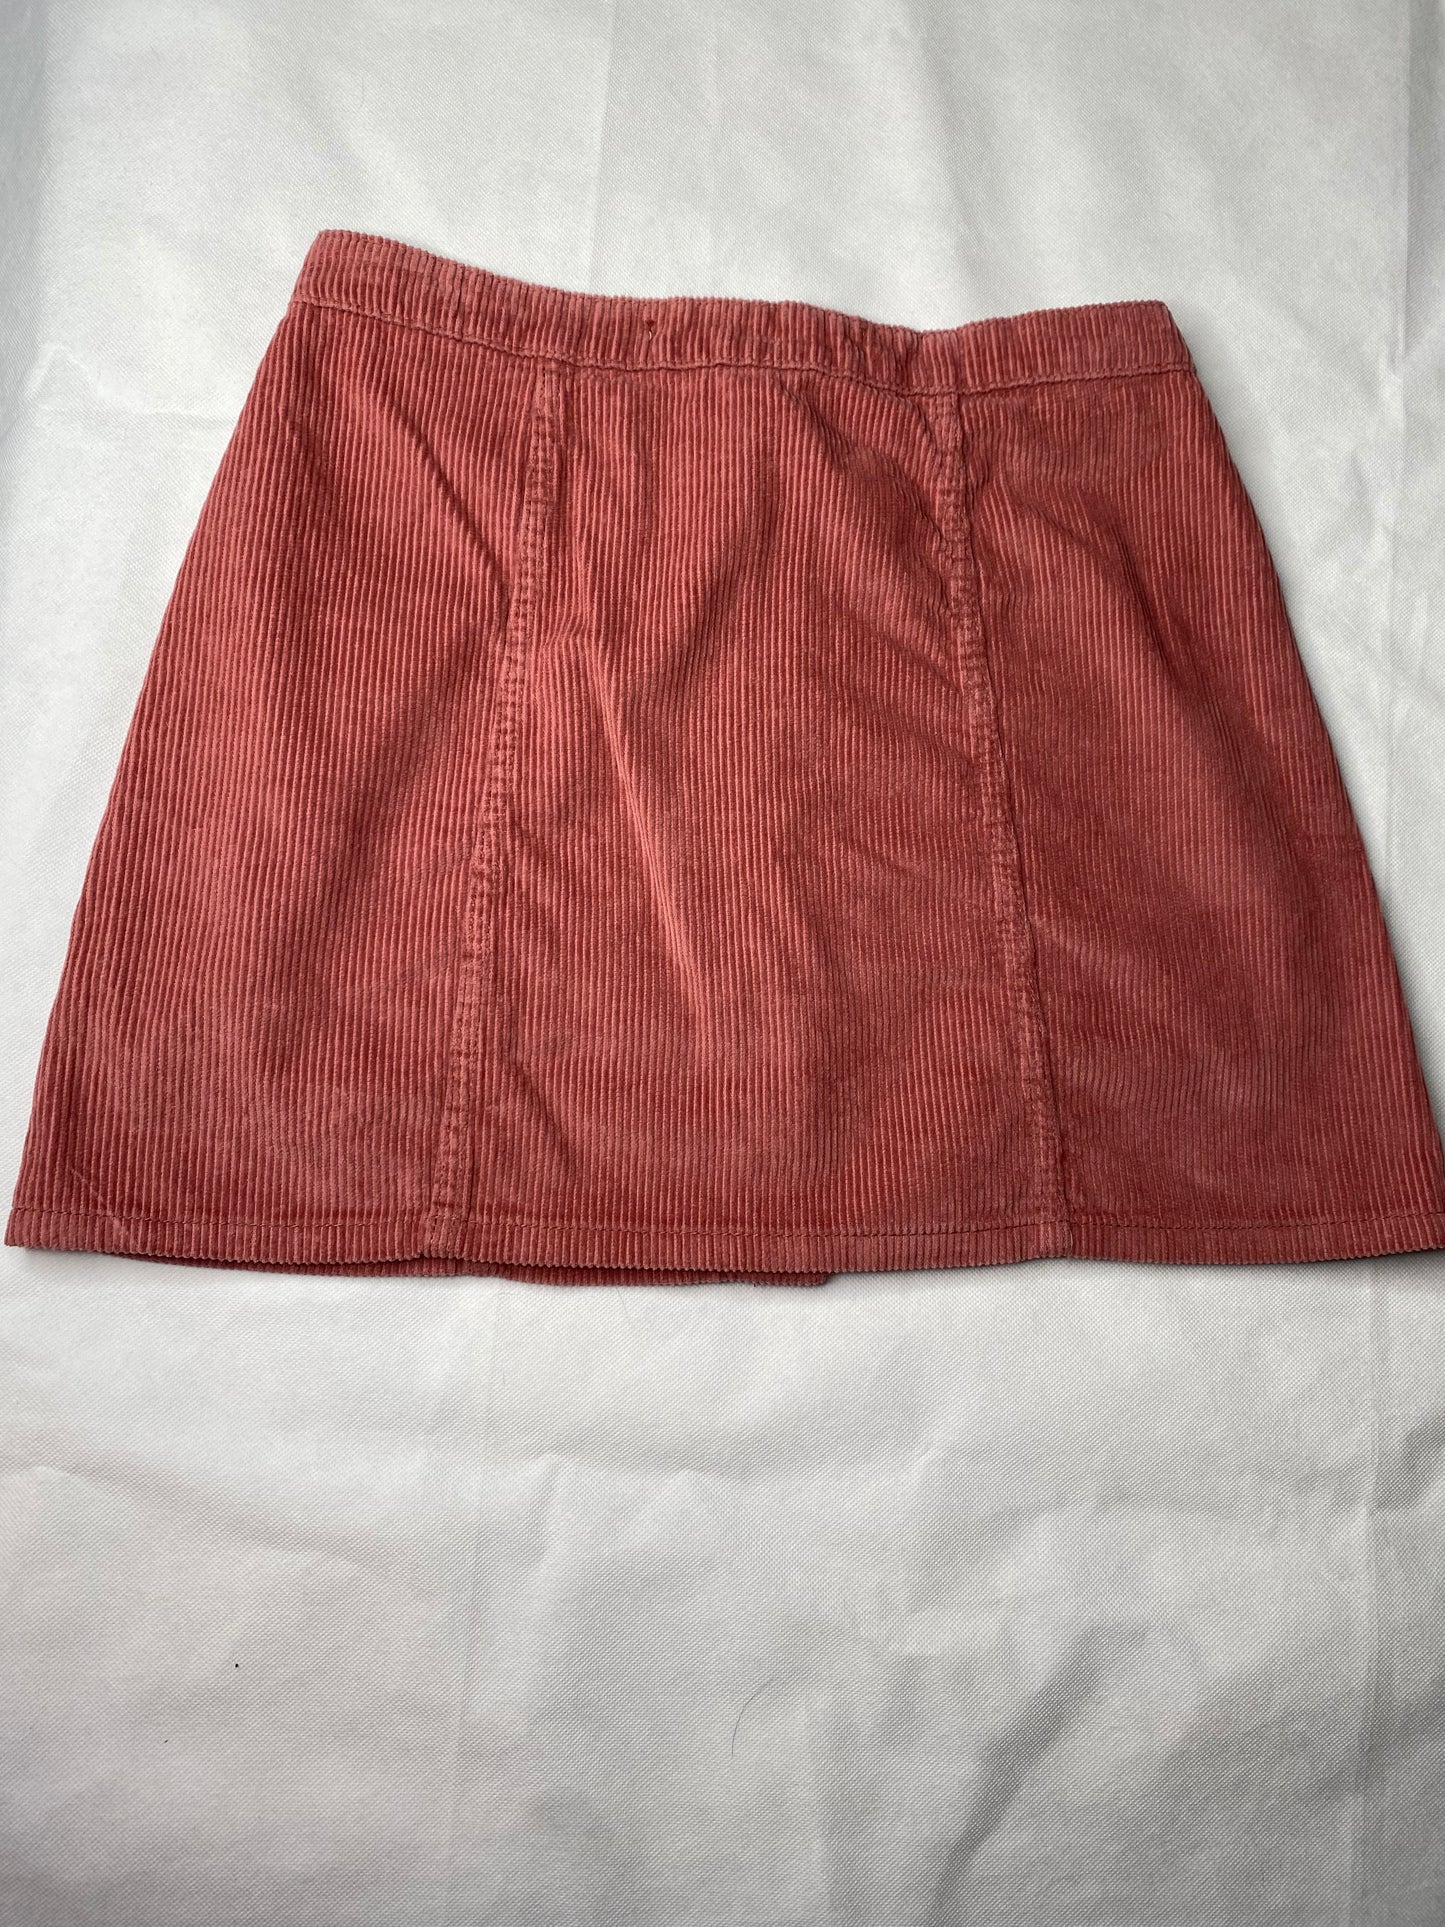 Primark - L/12 - BNWT - Corduroy button front mini skirt